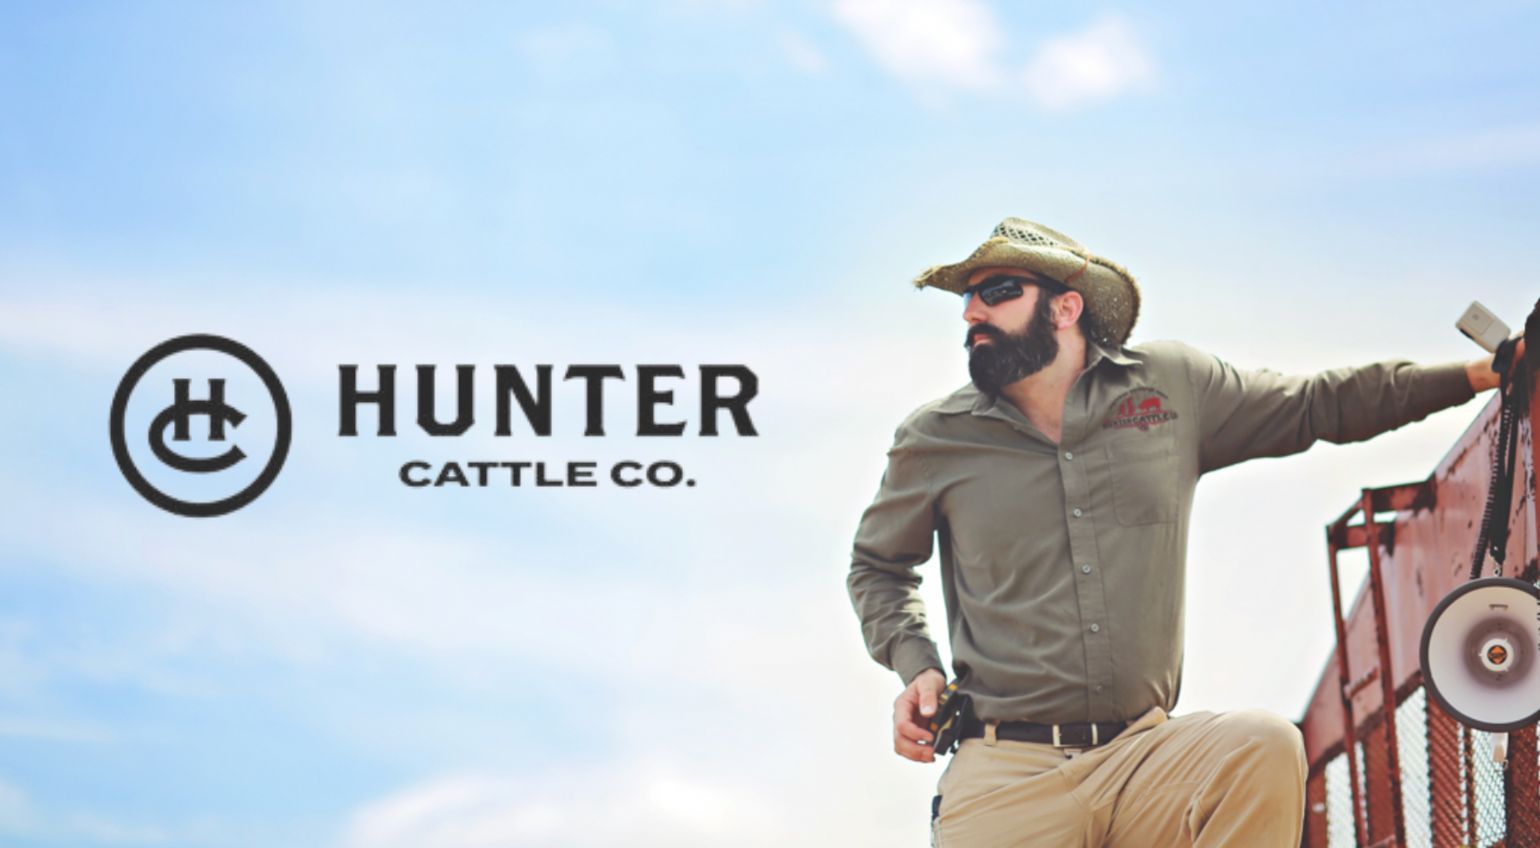 Hunter Cattle Co